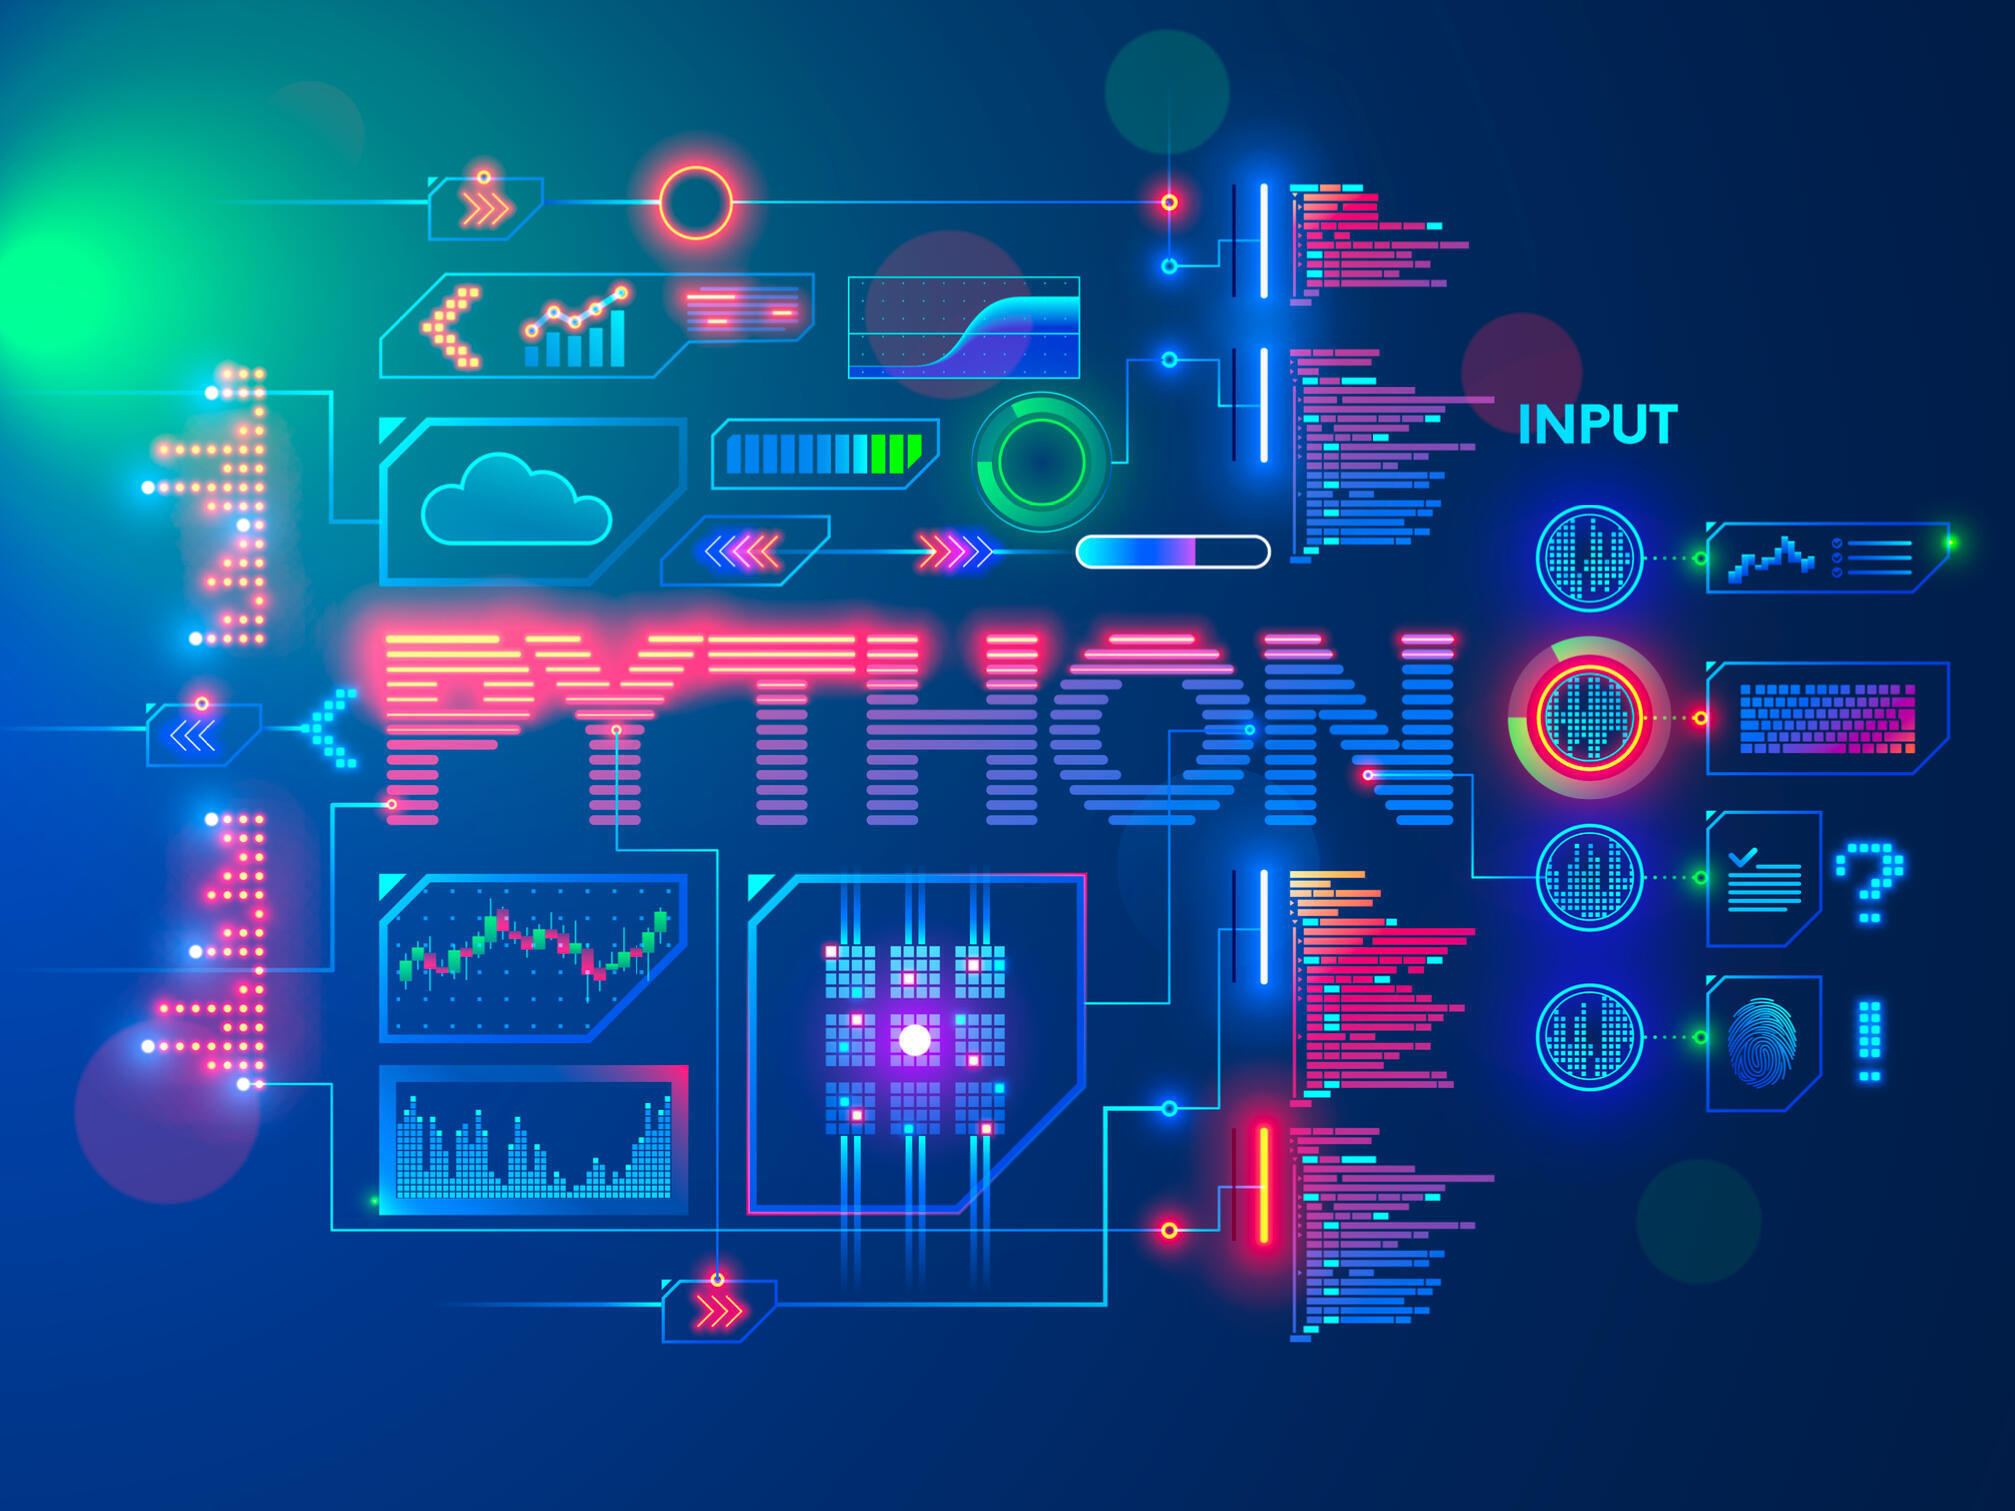 python.jpg